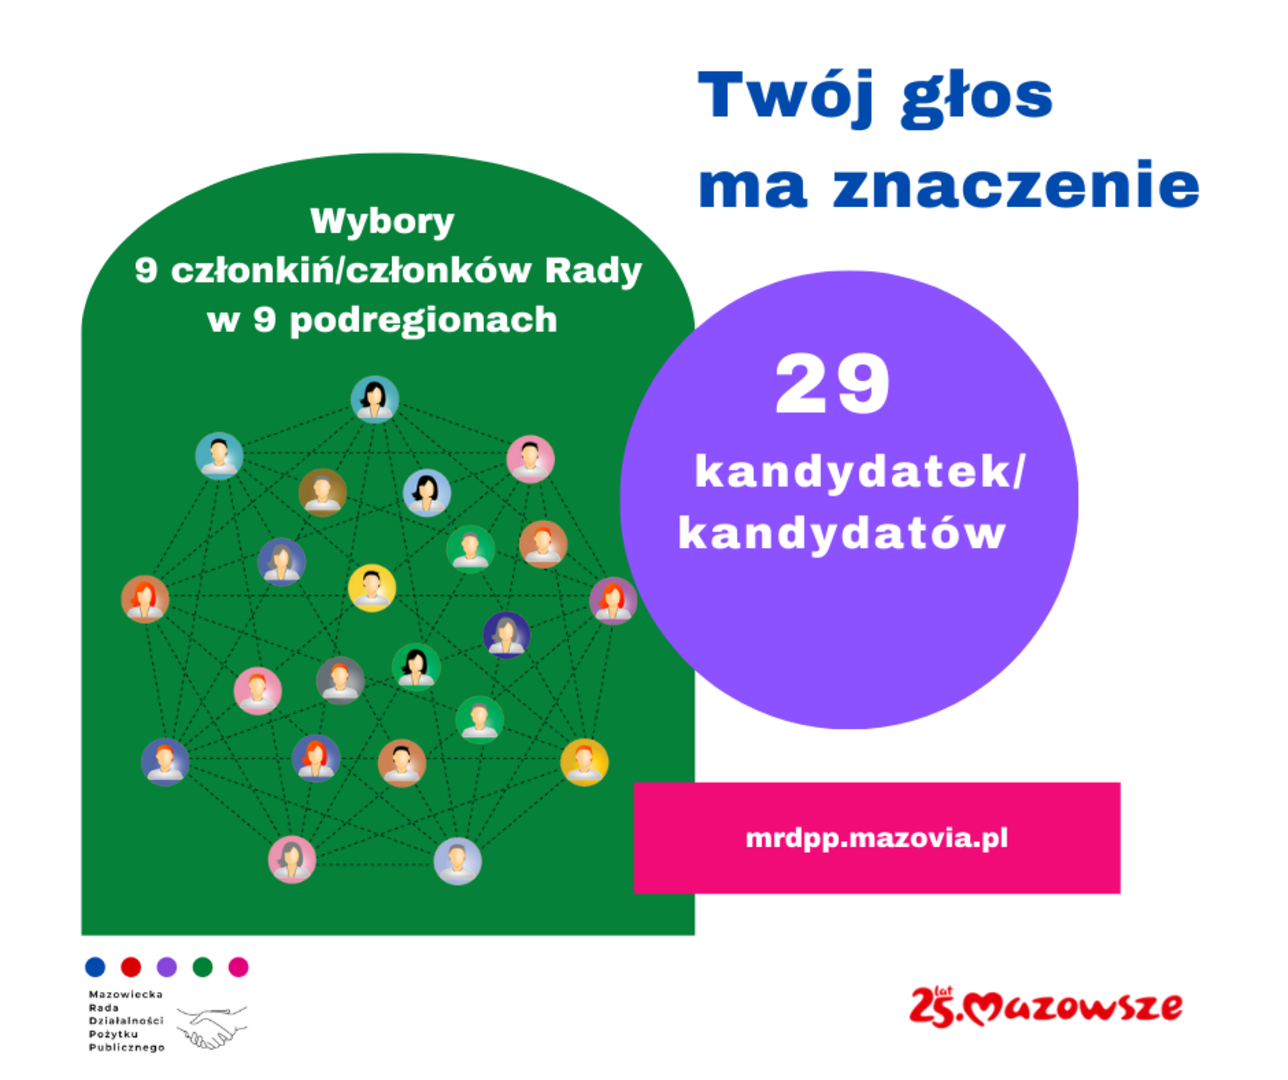 mazowiecka-rada-dzialalnosci-pozytku-publicznego_1.png